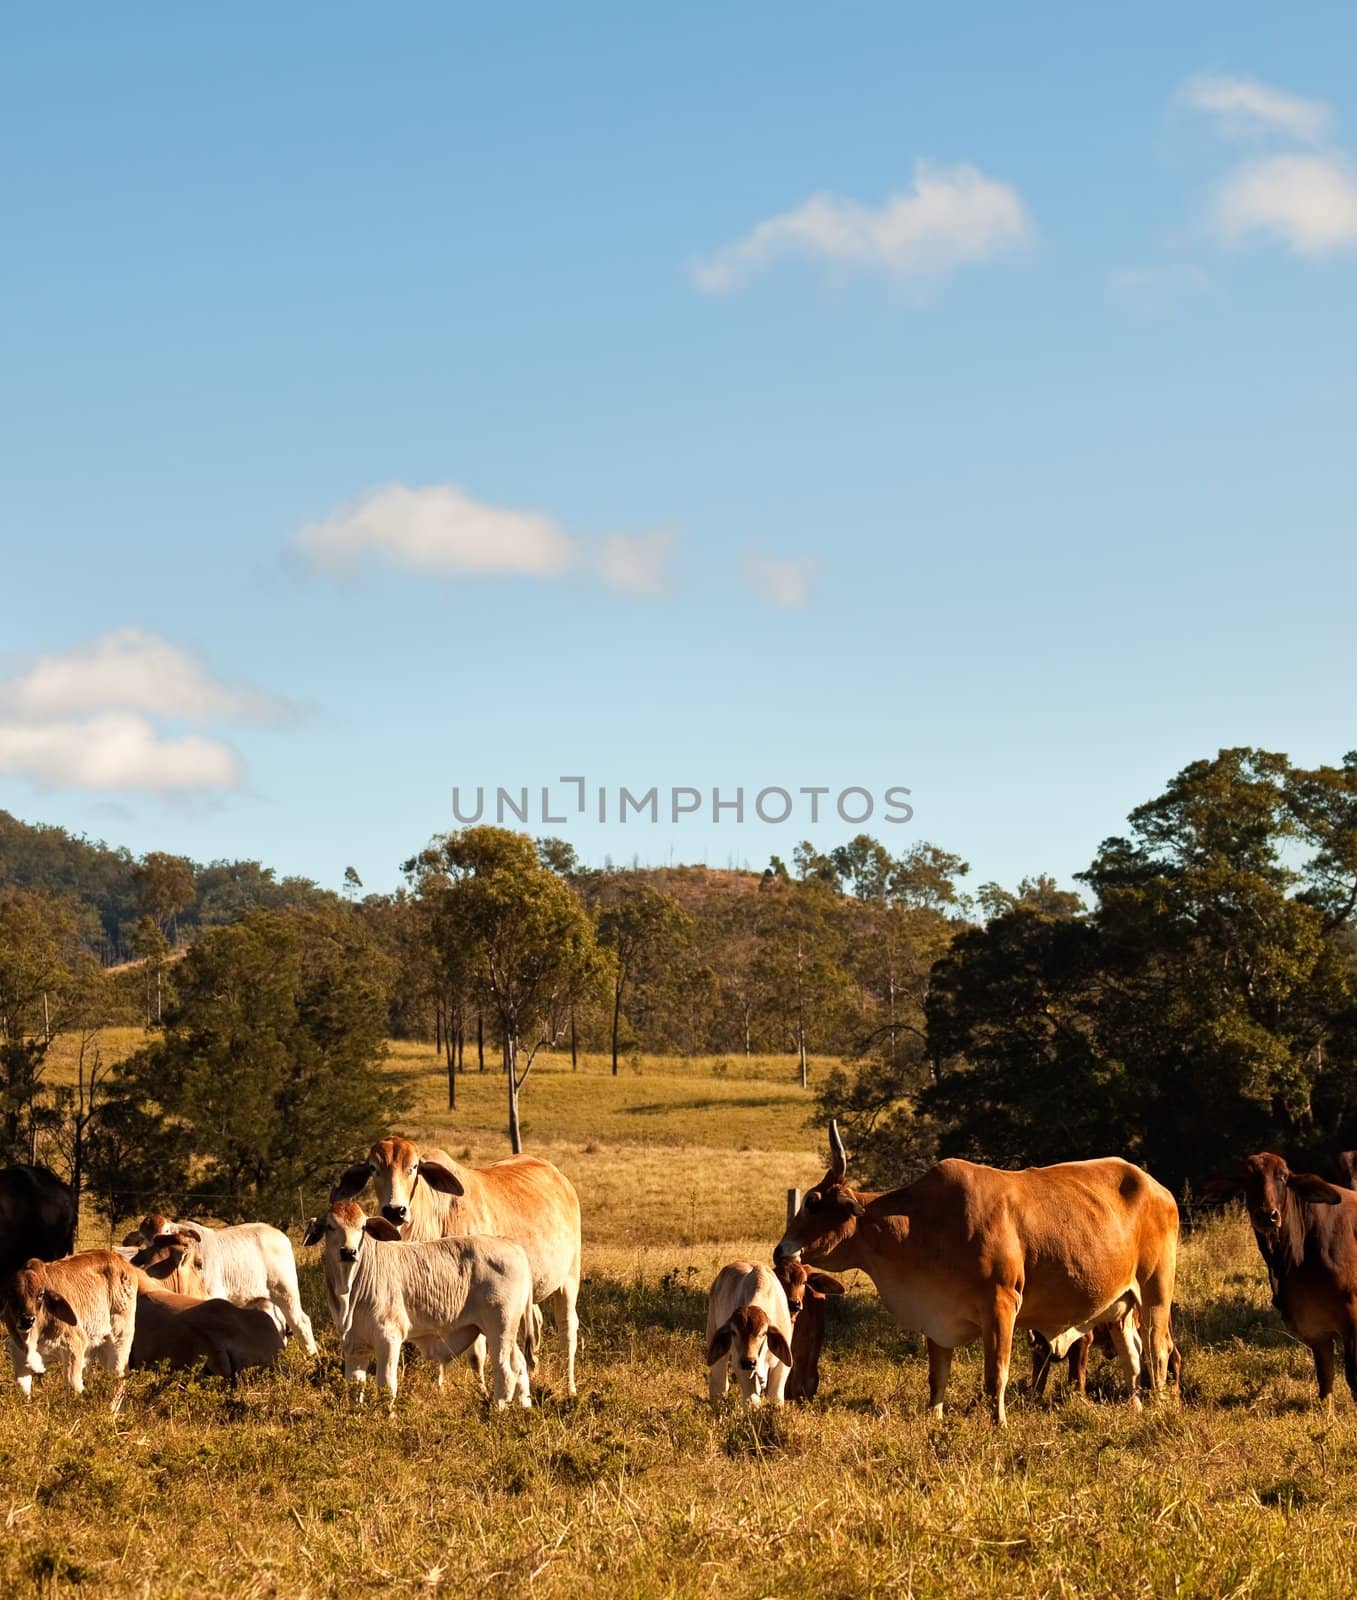 Australian Beef Cattle with calves in rural Queensland